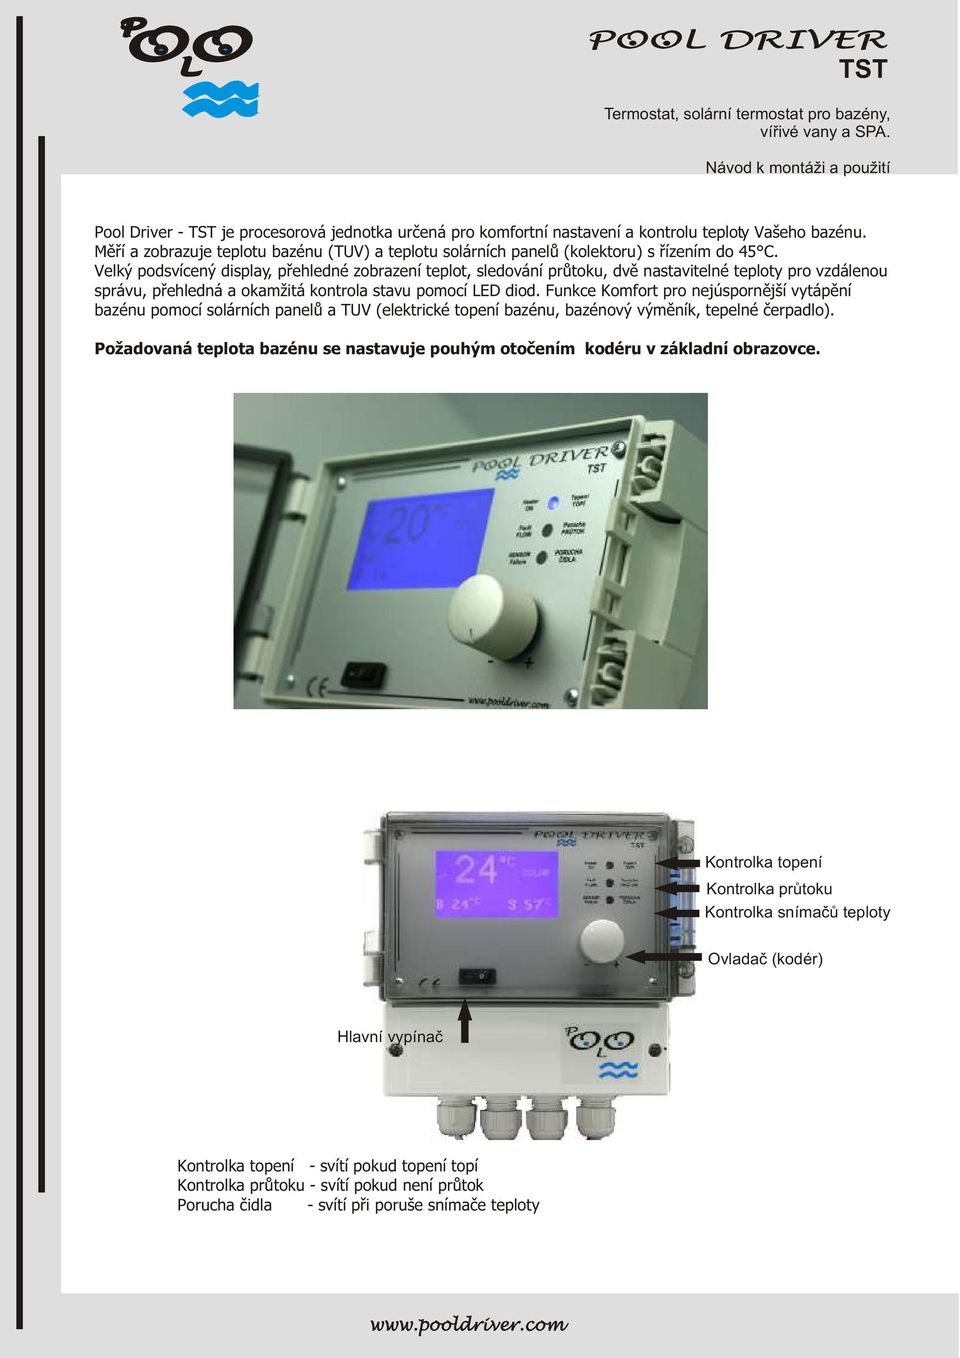 Velký podsvícený display, pøehledné zobrazení teplot, sledování prùtoku, dvì nastavitelné teploty pro vzdálenou správu, pøehledná a okamžitá kontrola stavu pomocí ED diod.